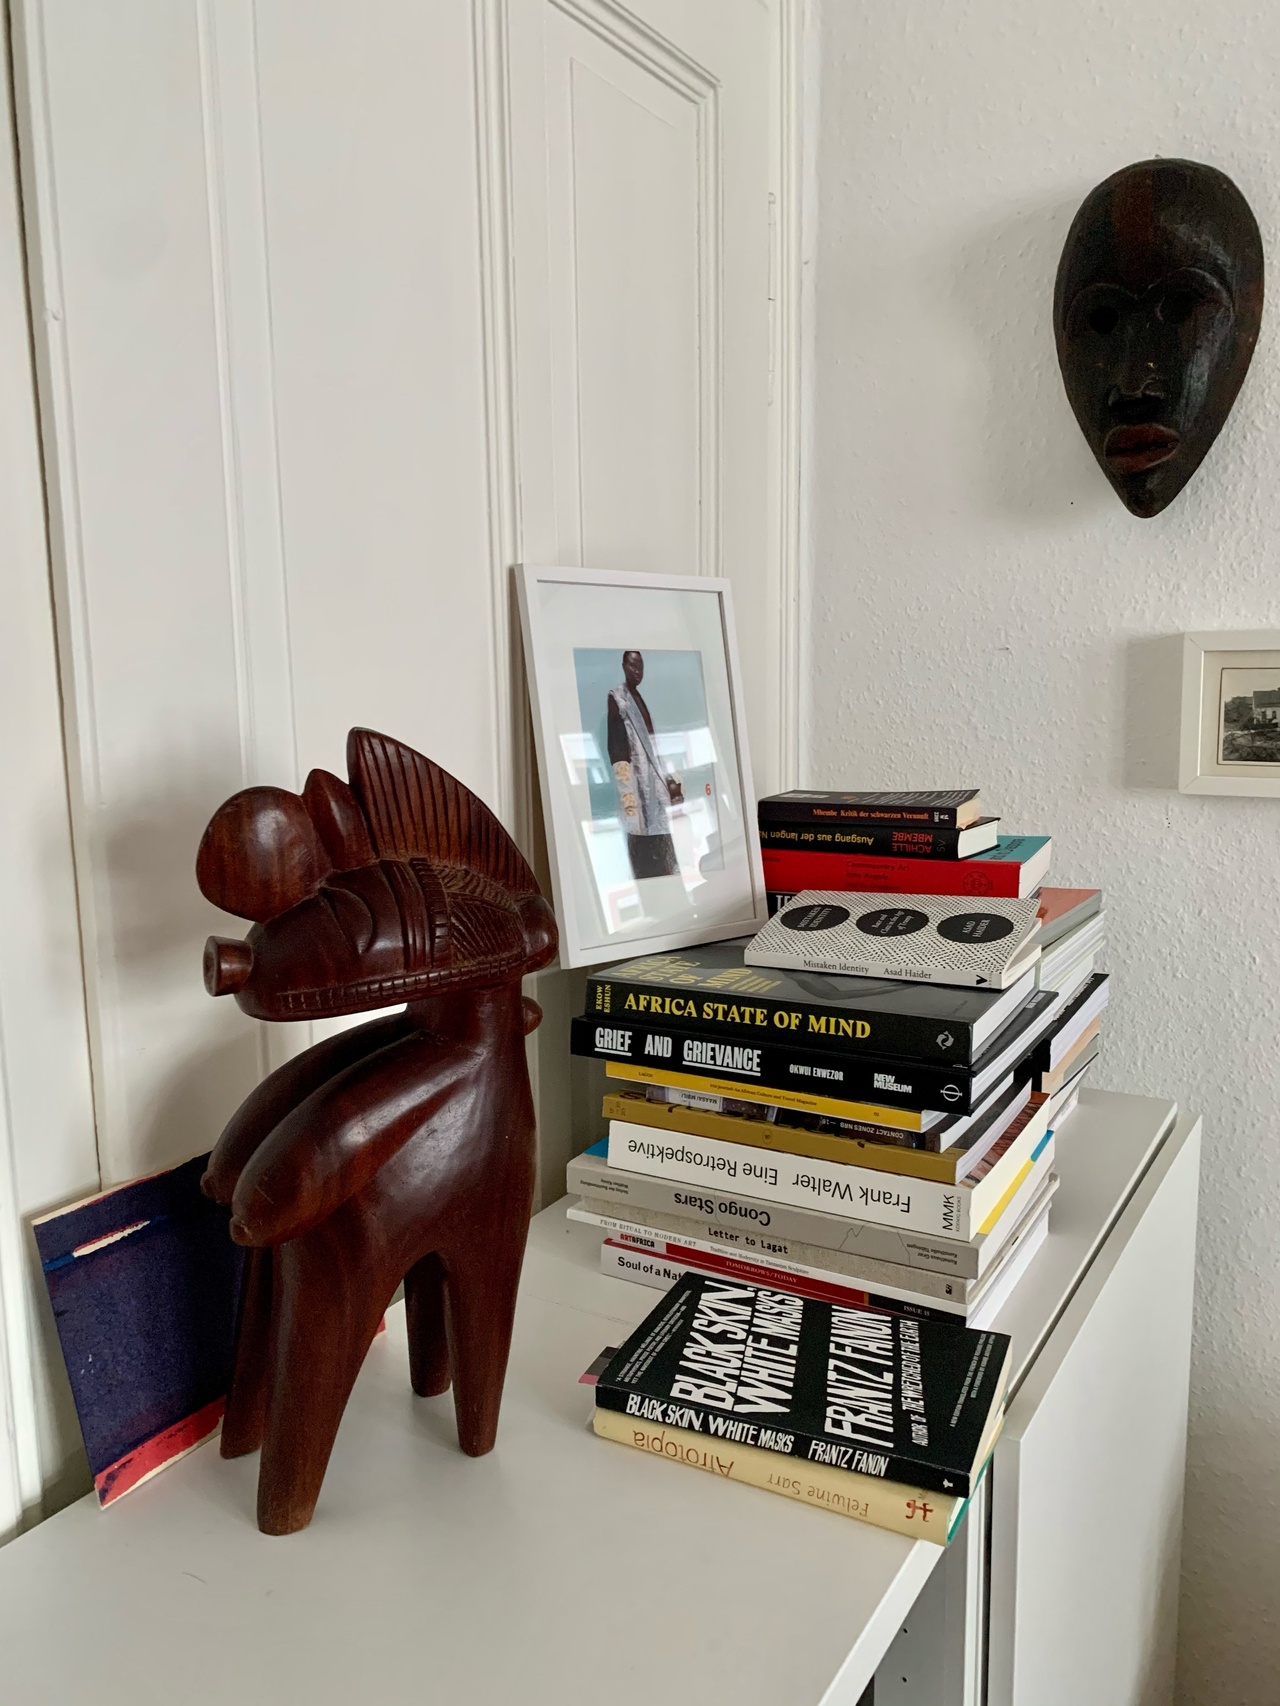 Nimba-Fruchtbarkeitsgöttin, vermutlich aus dem heutigen Guinea, und Feuerläufer-Maske aus Mali mit zufälliger Auswahl an Büchern der Autorin in ihrer Frankfurter Wohnung.